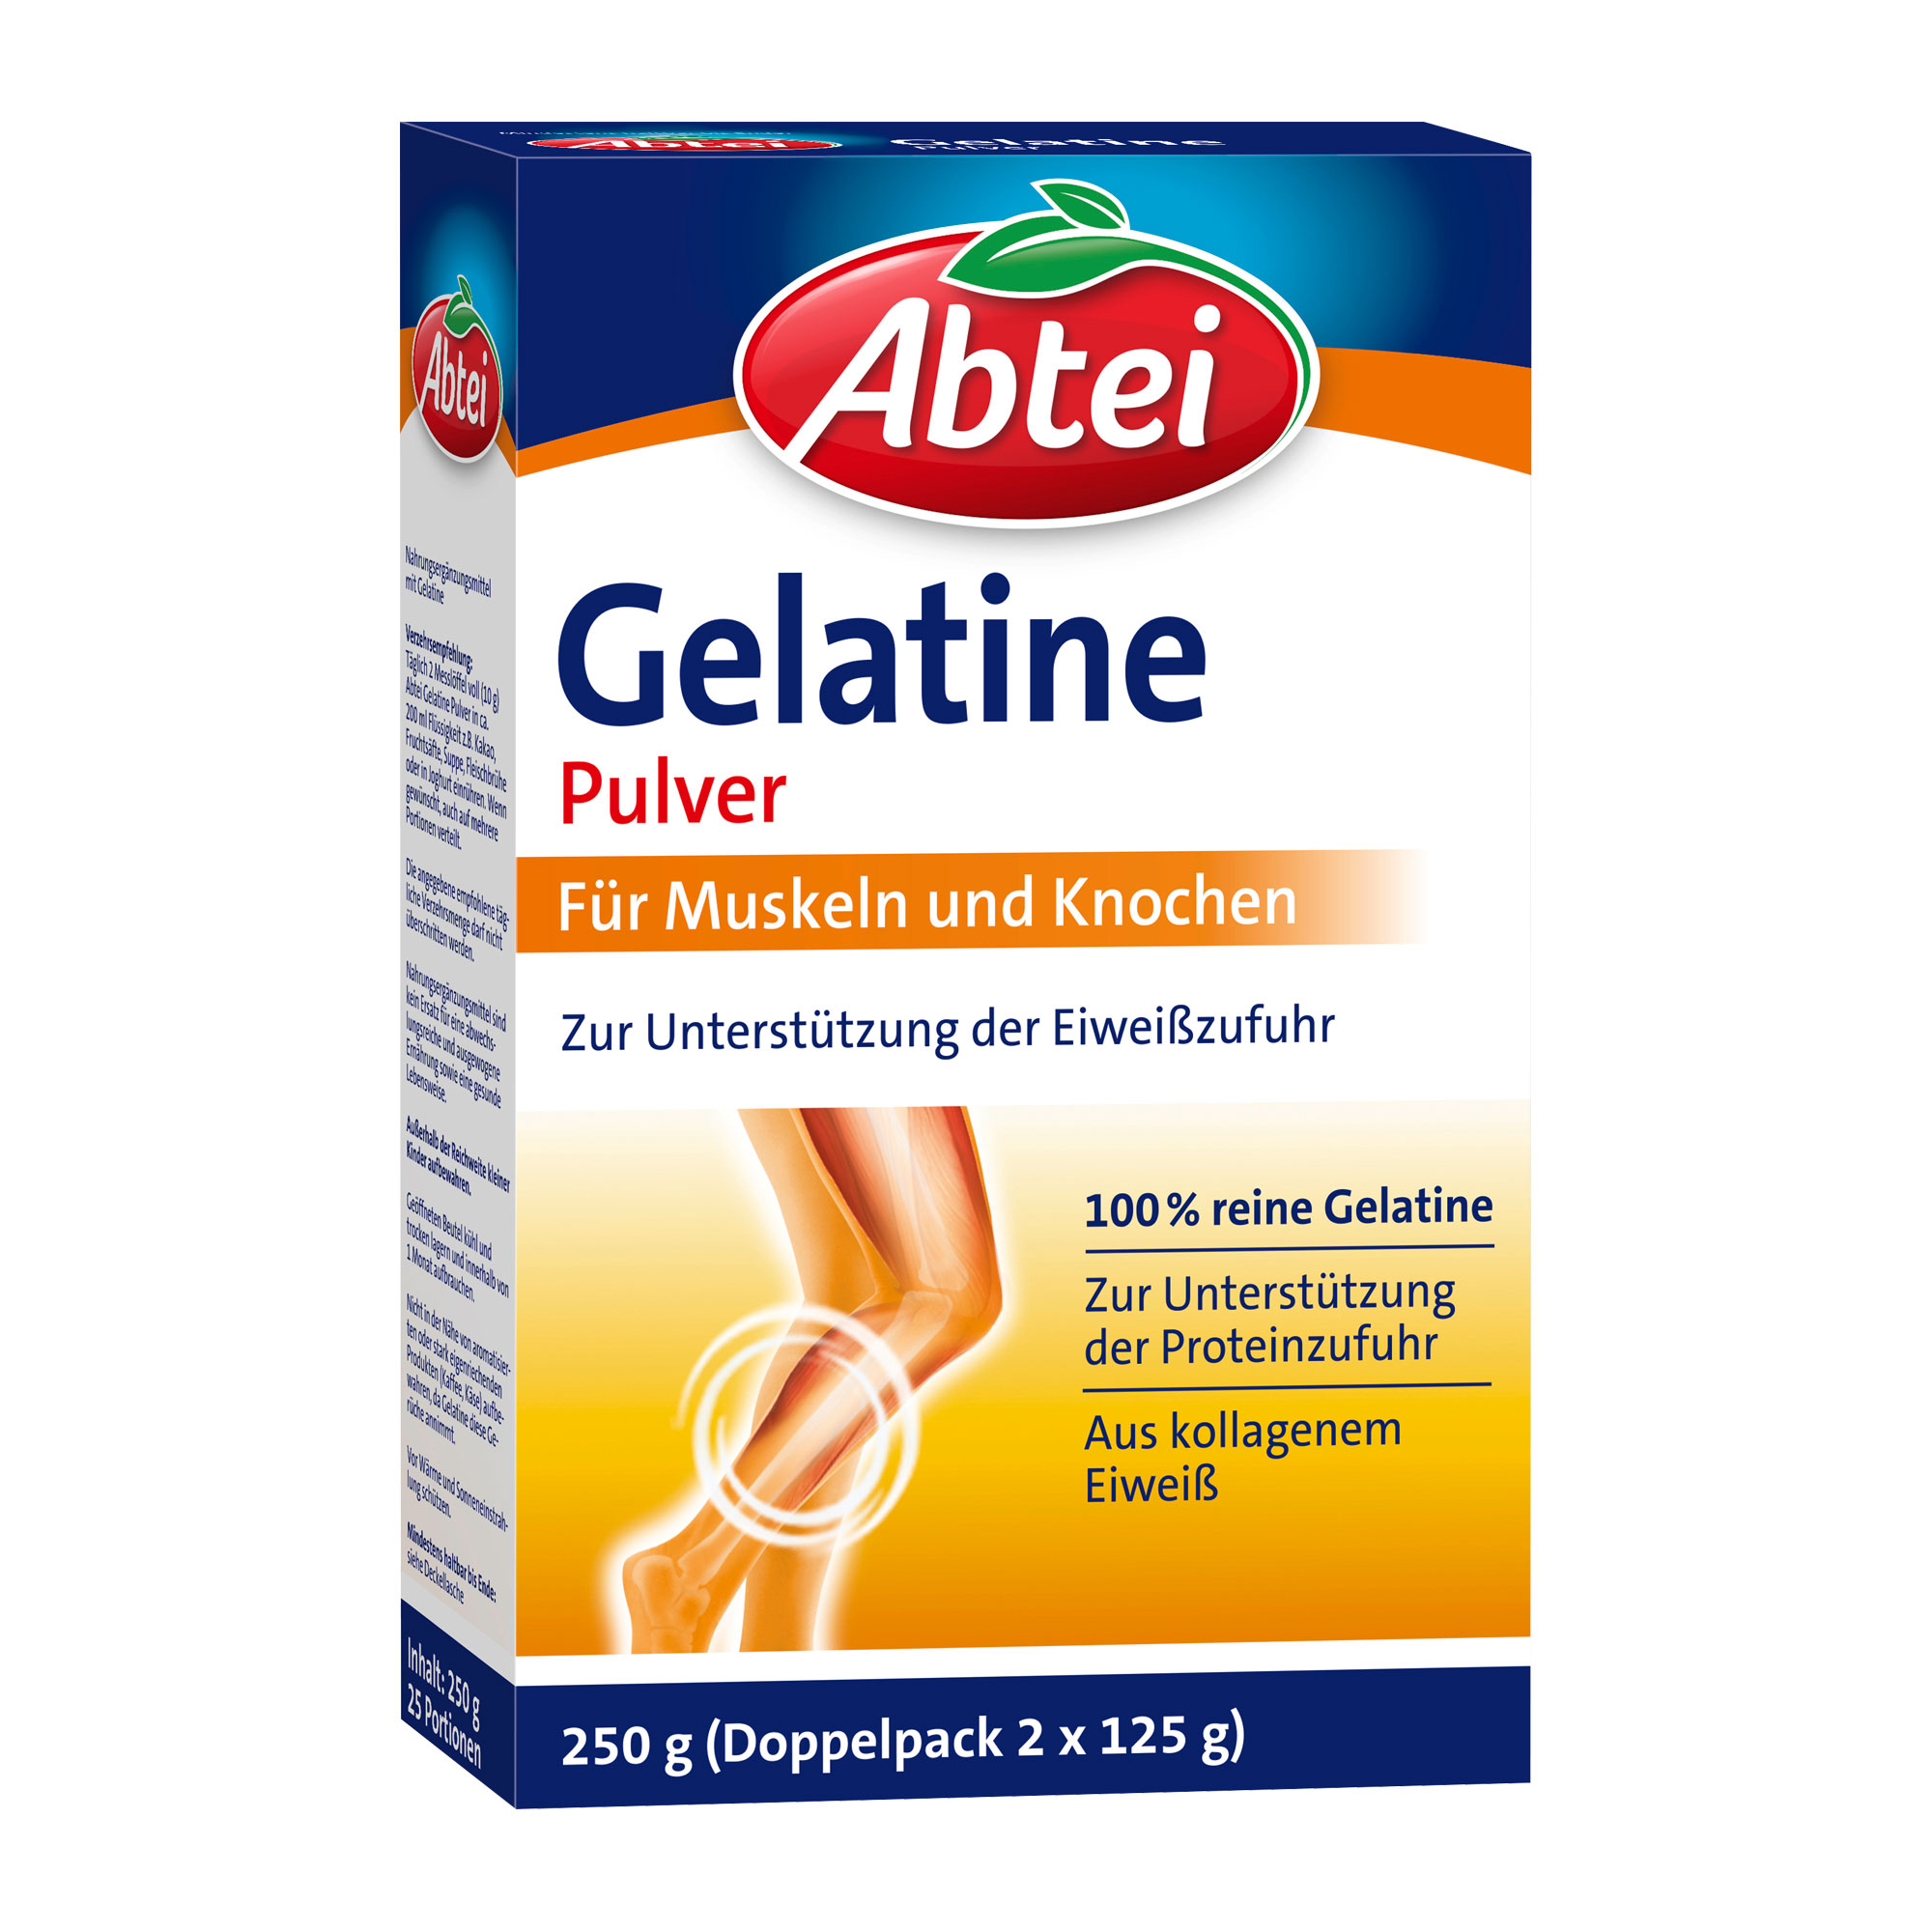 Nahrungsergänzungsmittel mit Gelatine.